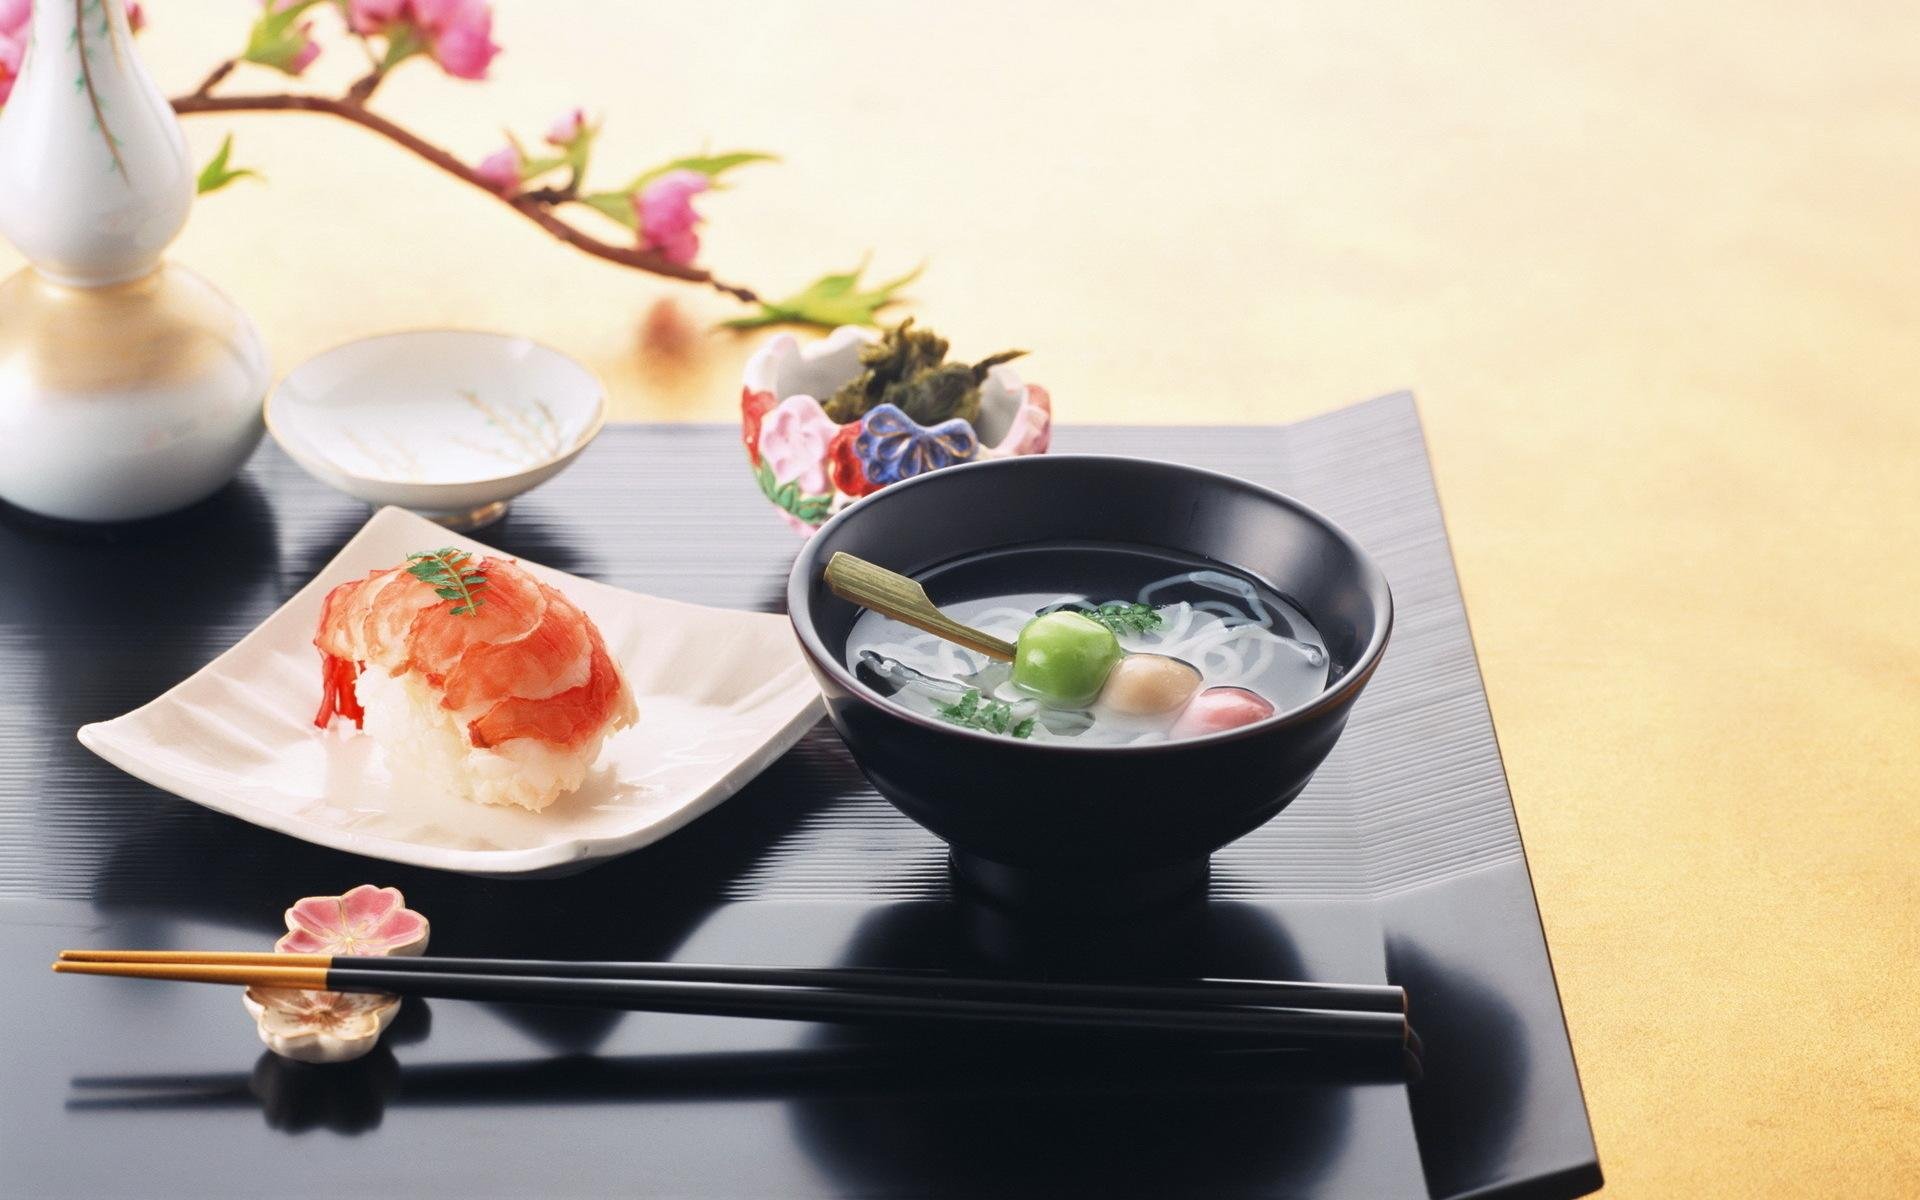 دراسة تكشف عن عنصر "أساسي في الغذاء الياباني" قد يرتبط بانخفاض خطر الموت المبكر!